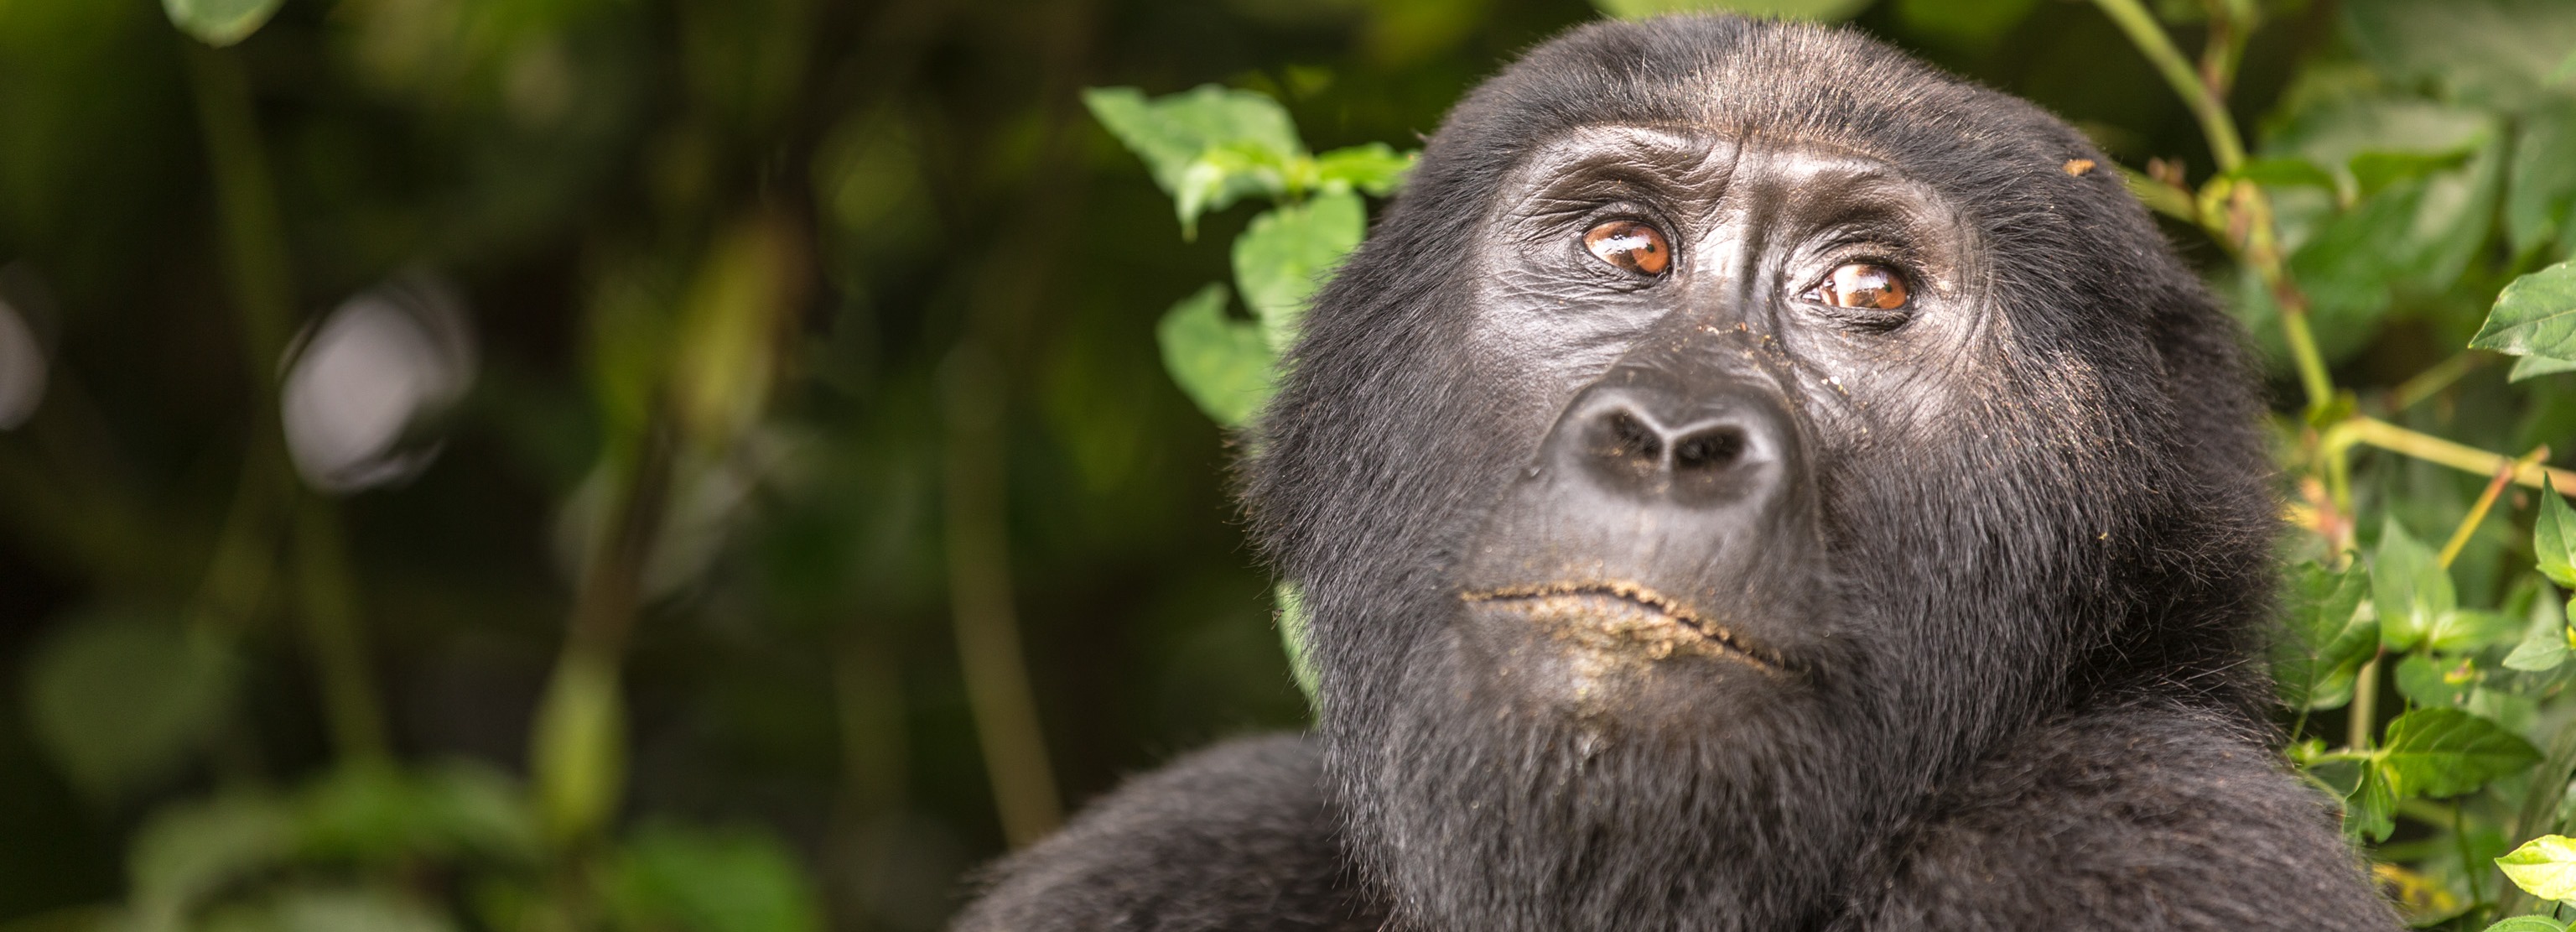 Uganda Gorilla_2